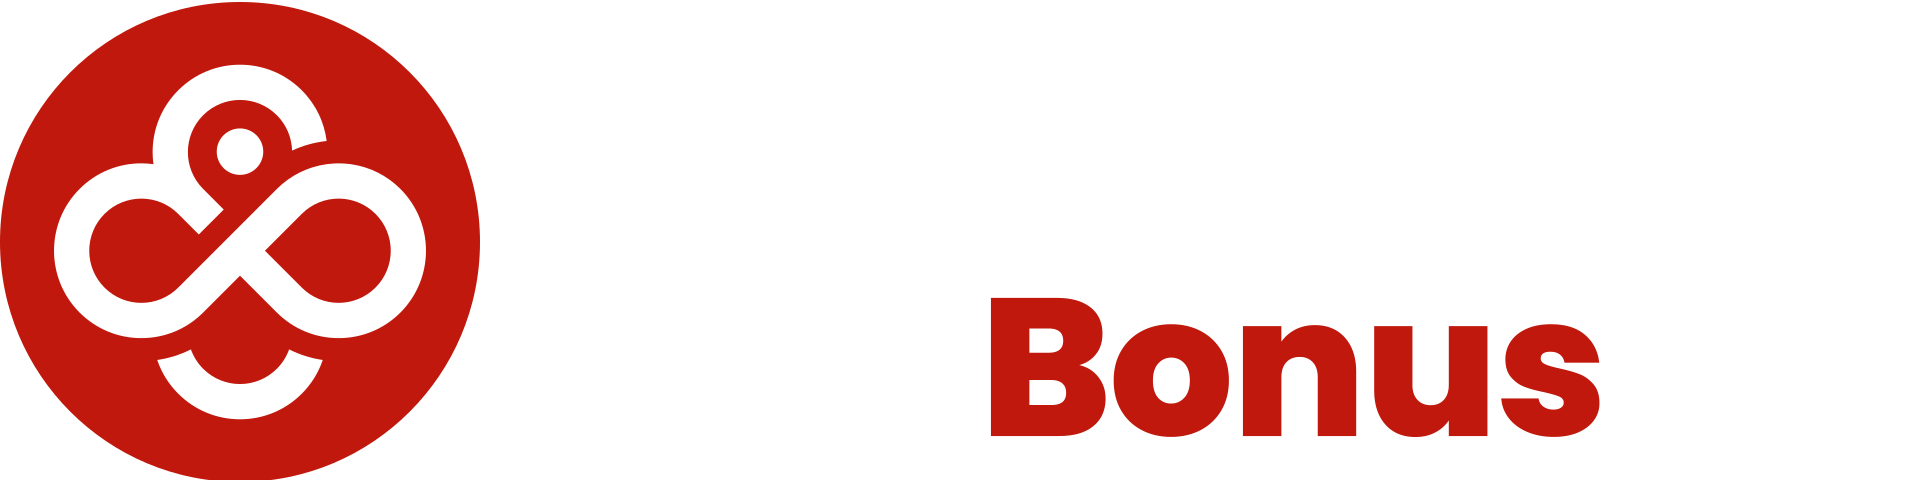 coin poker bonus